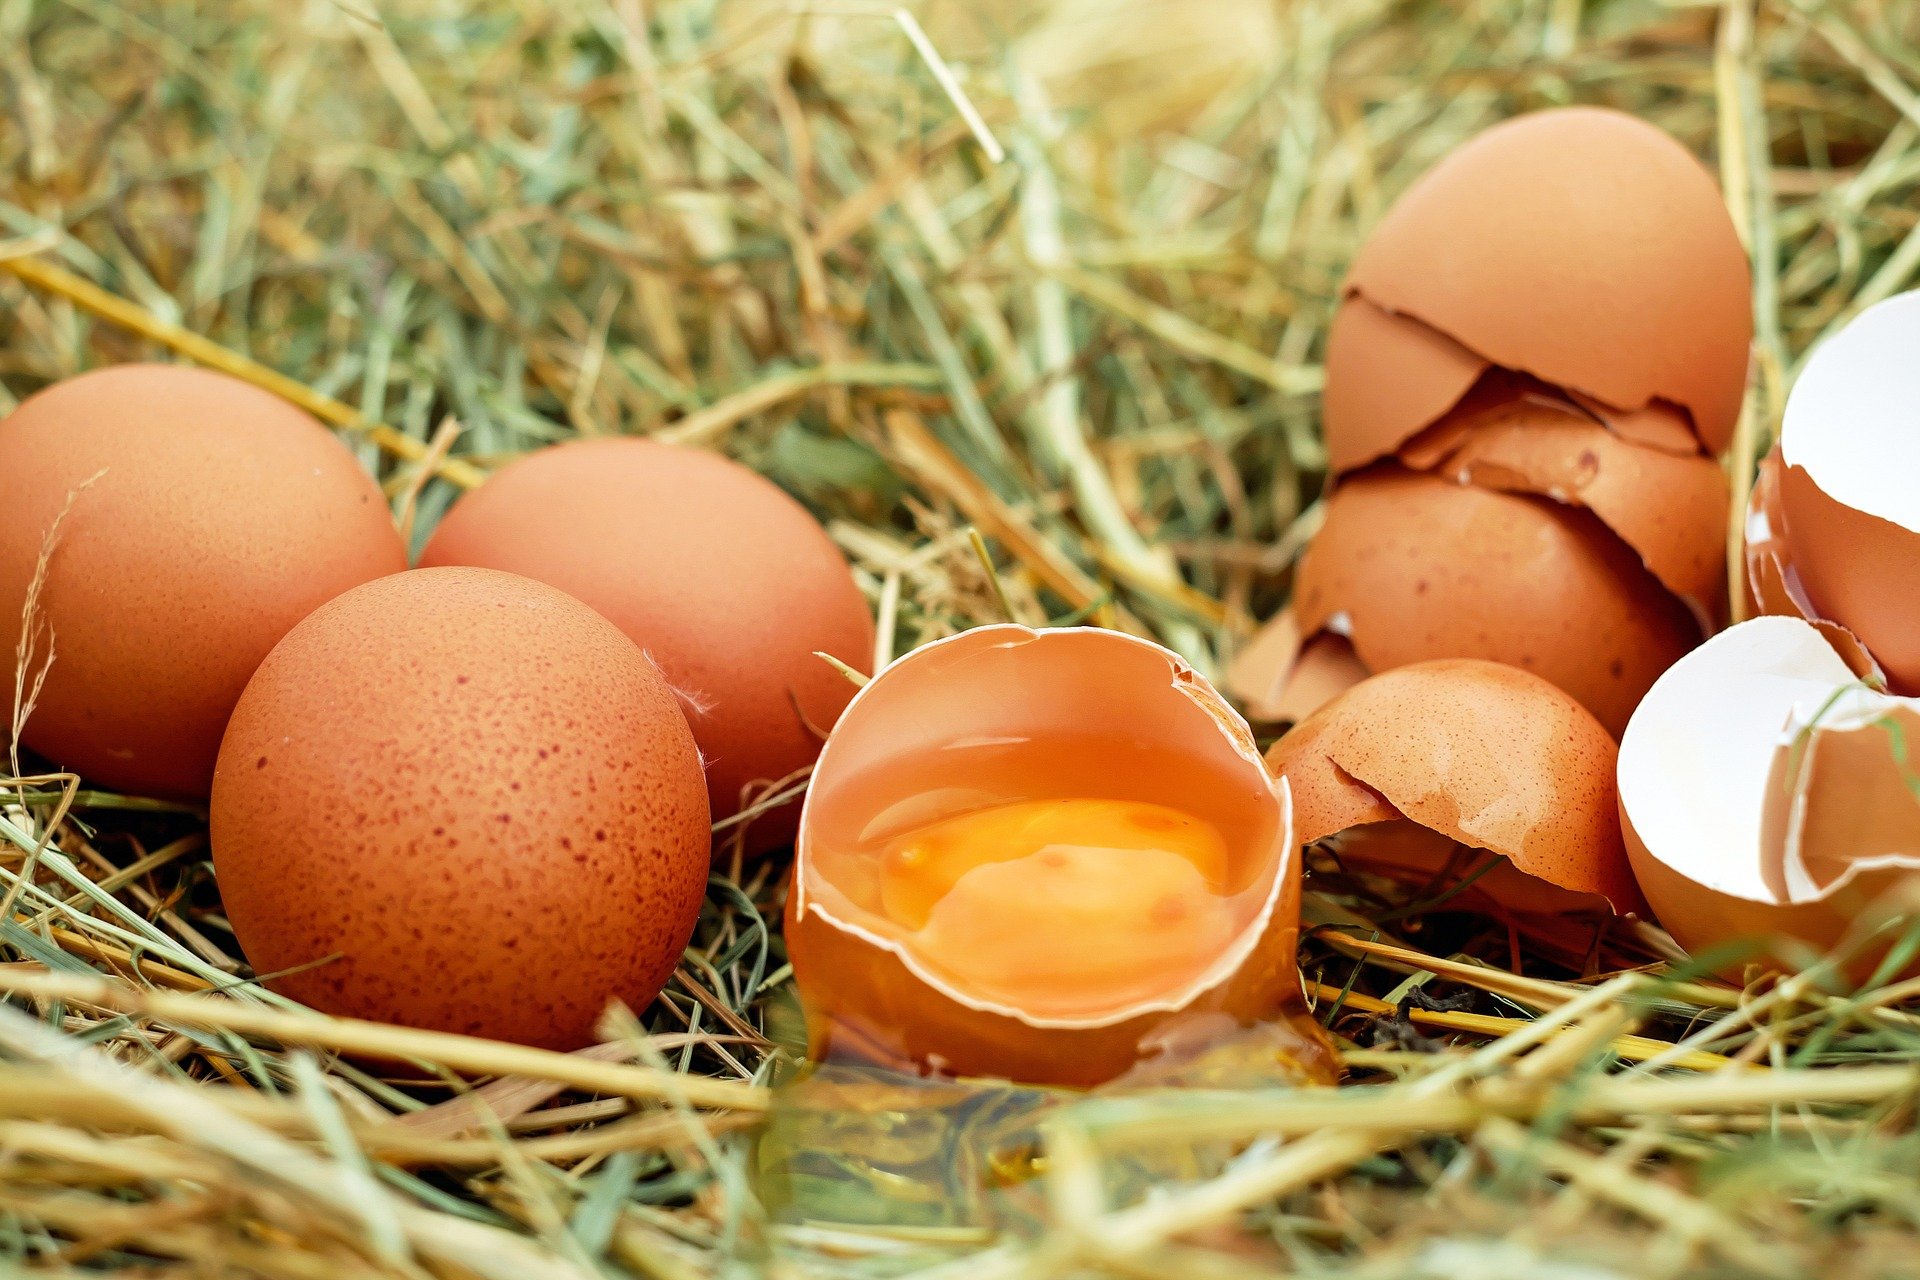 huevo alimento saludable que no engorda